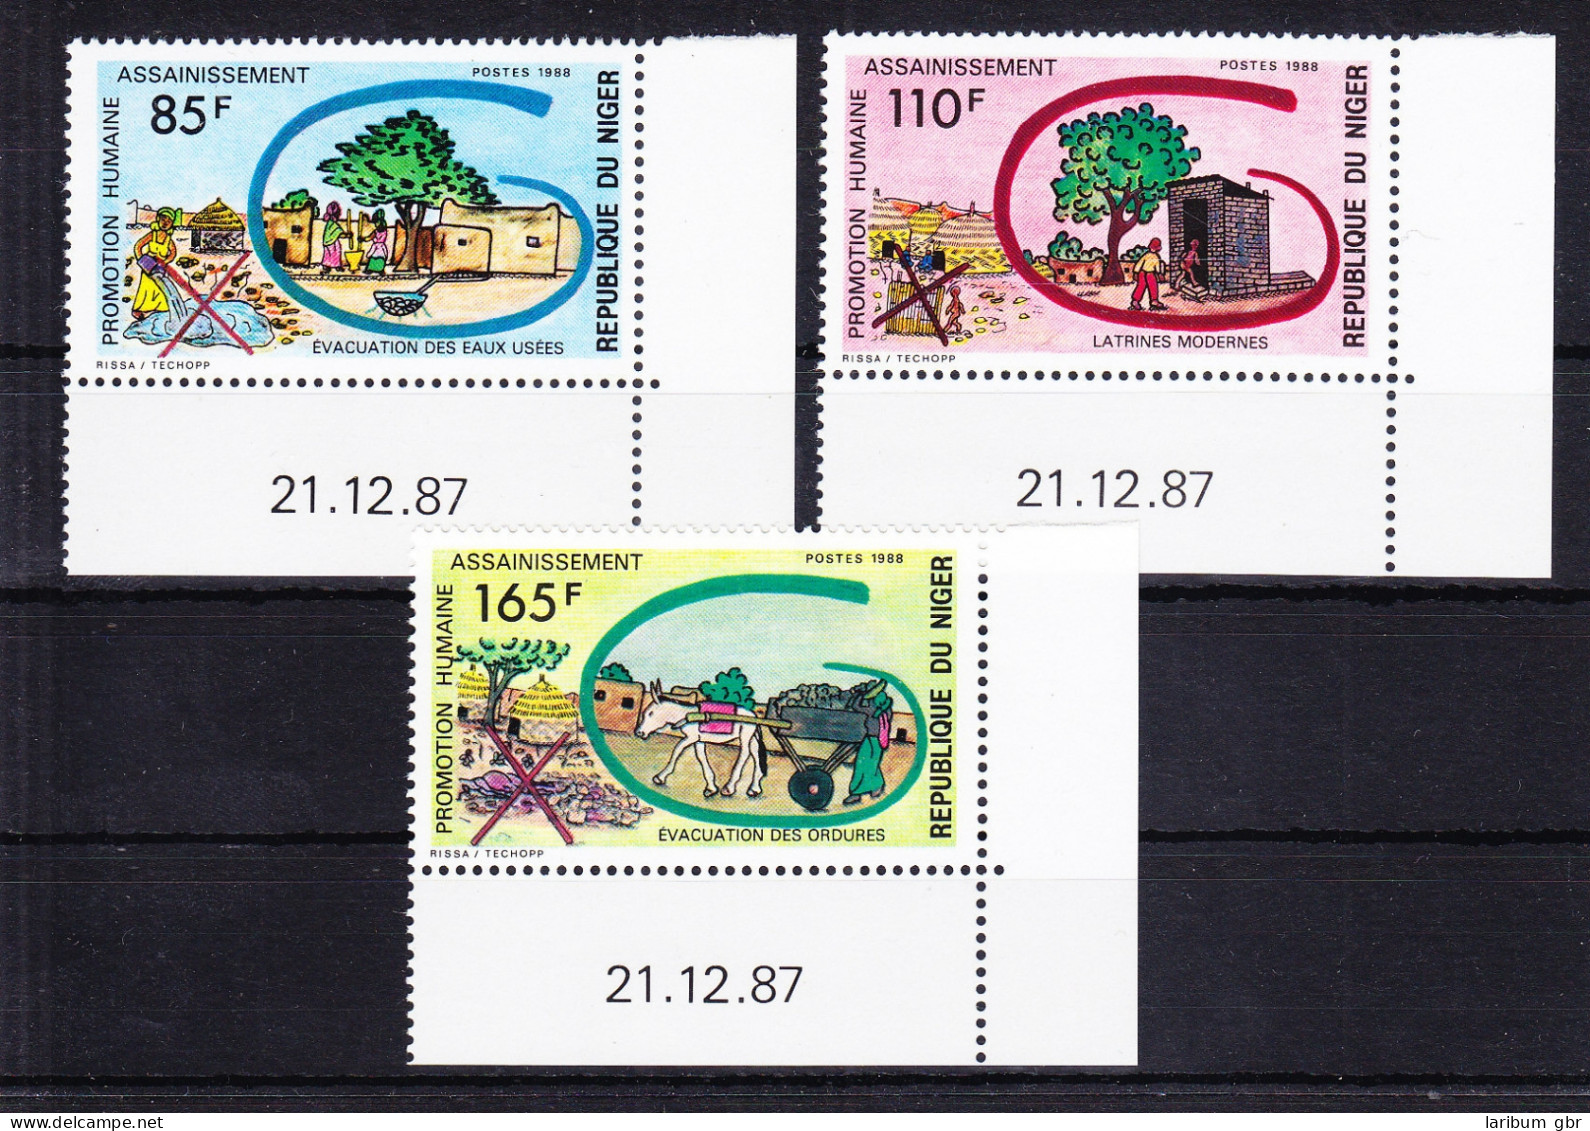 Niger 1039-1041 Postfrisch Entsorgungseinrichtung, MNH #RB730 - Niger (1960-...)